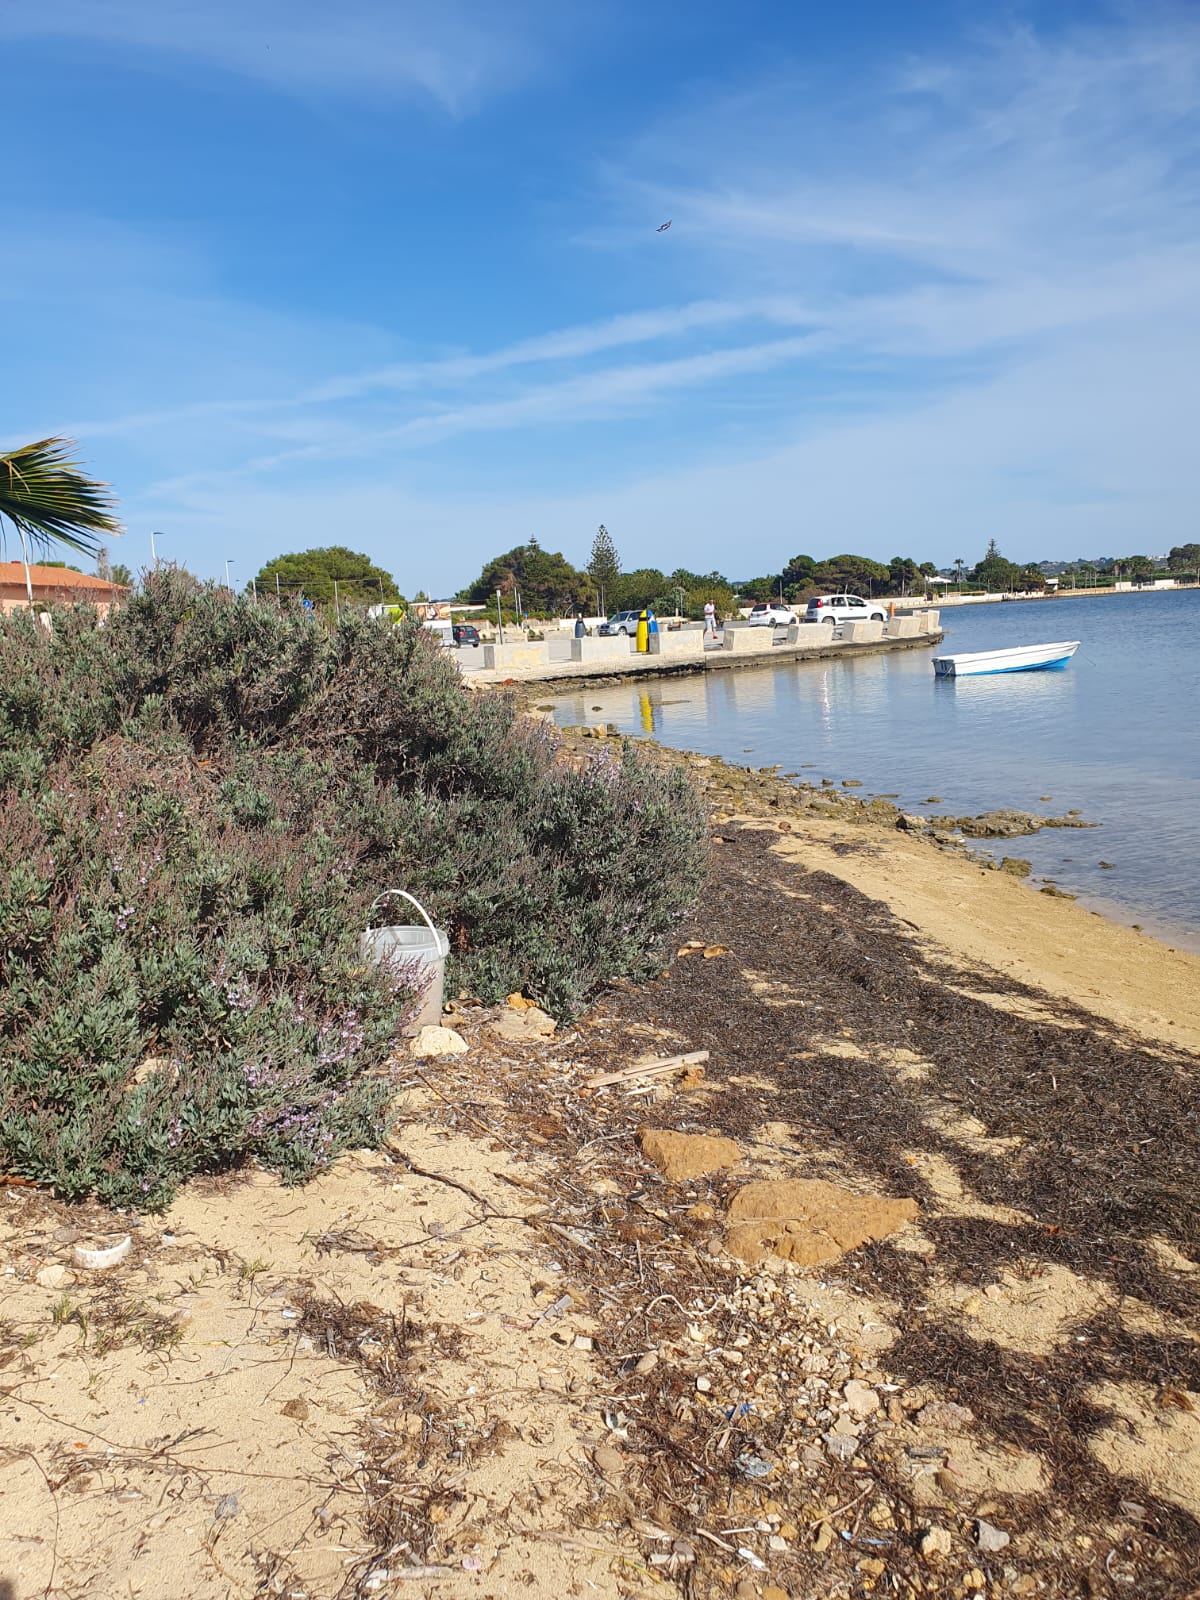 Una striscia di spiaggia allo Stagnone in stato di abbandono e da riqualificare